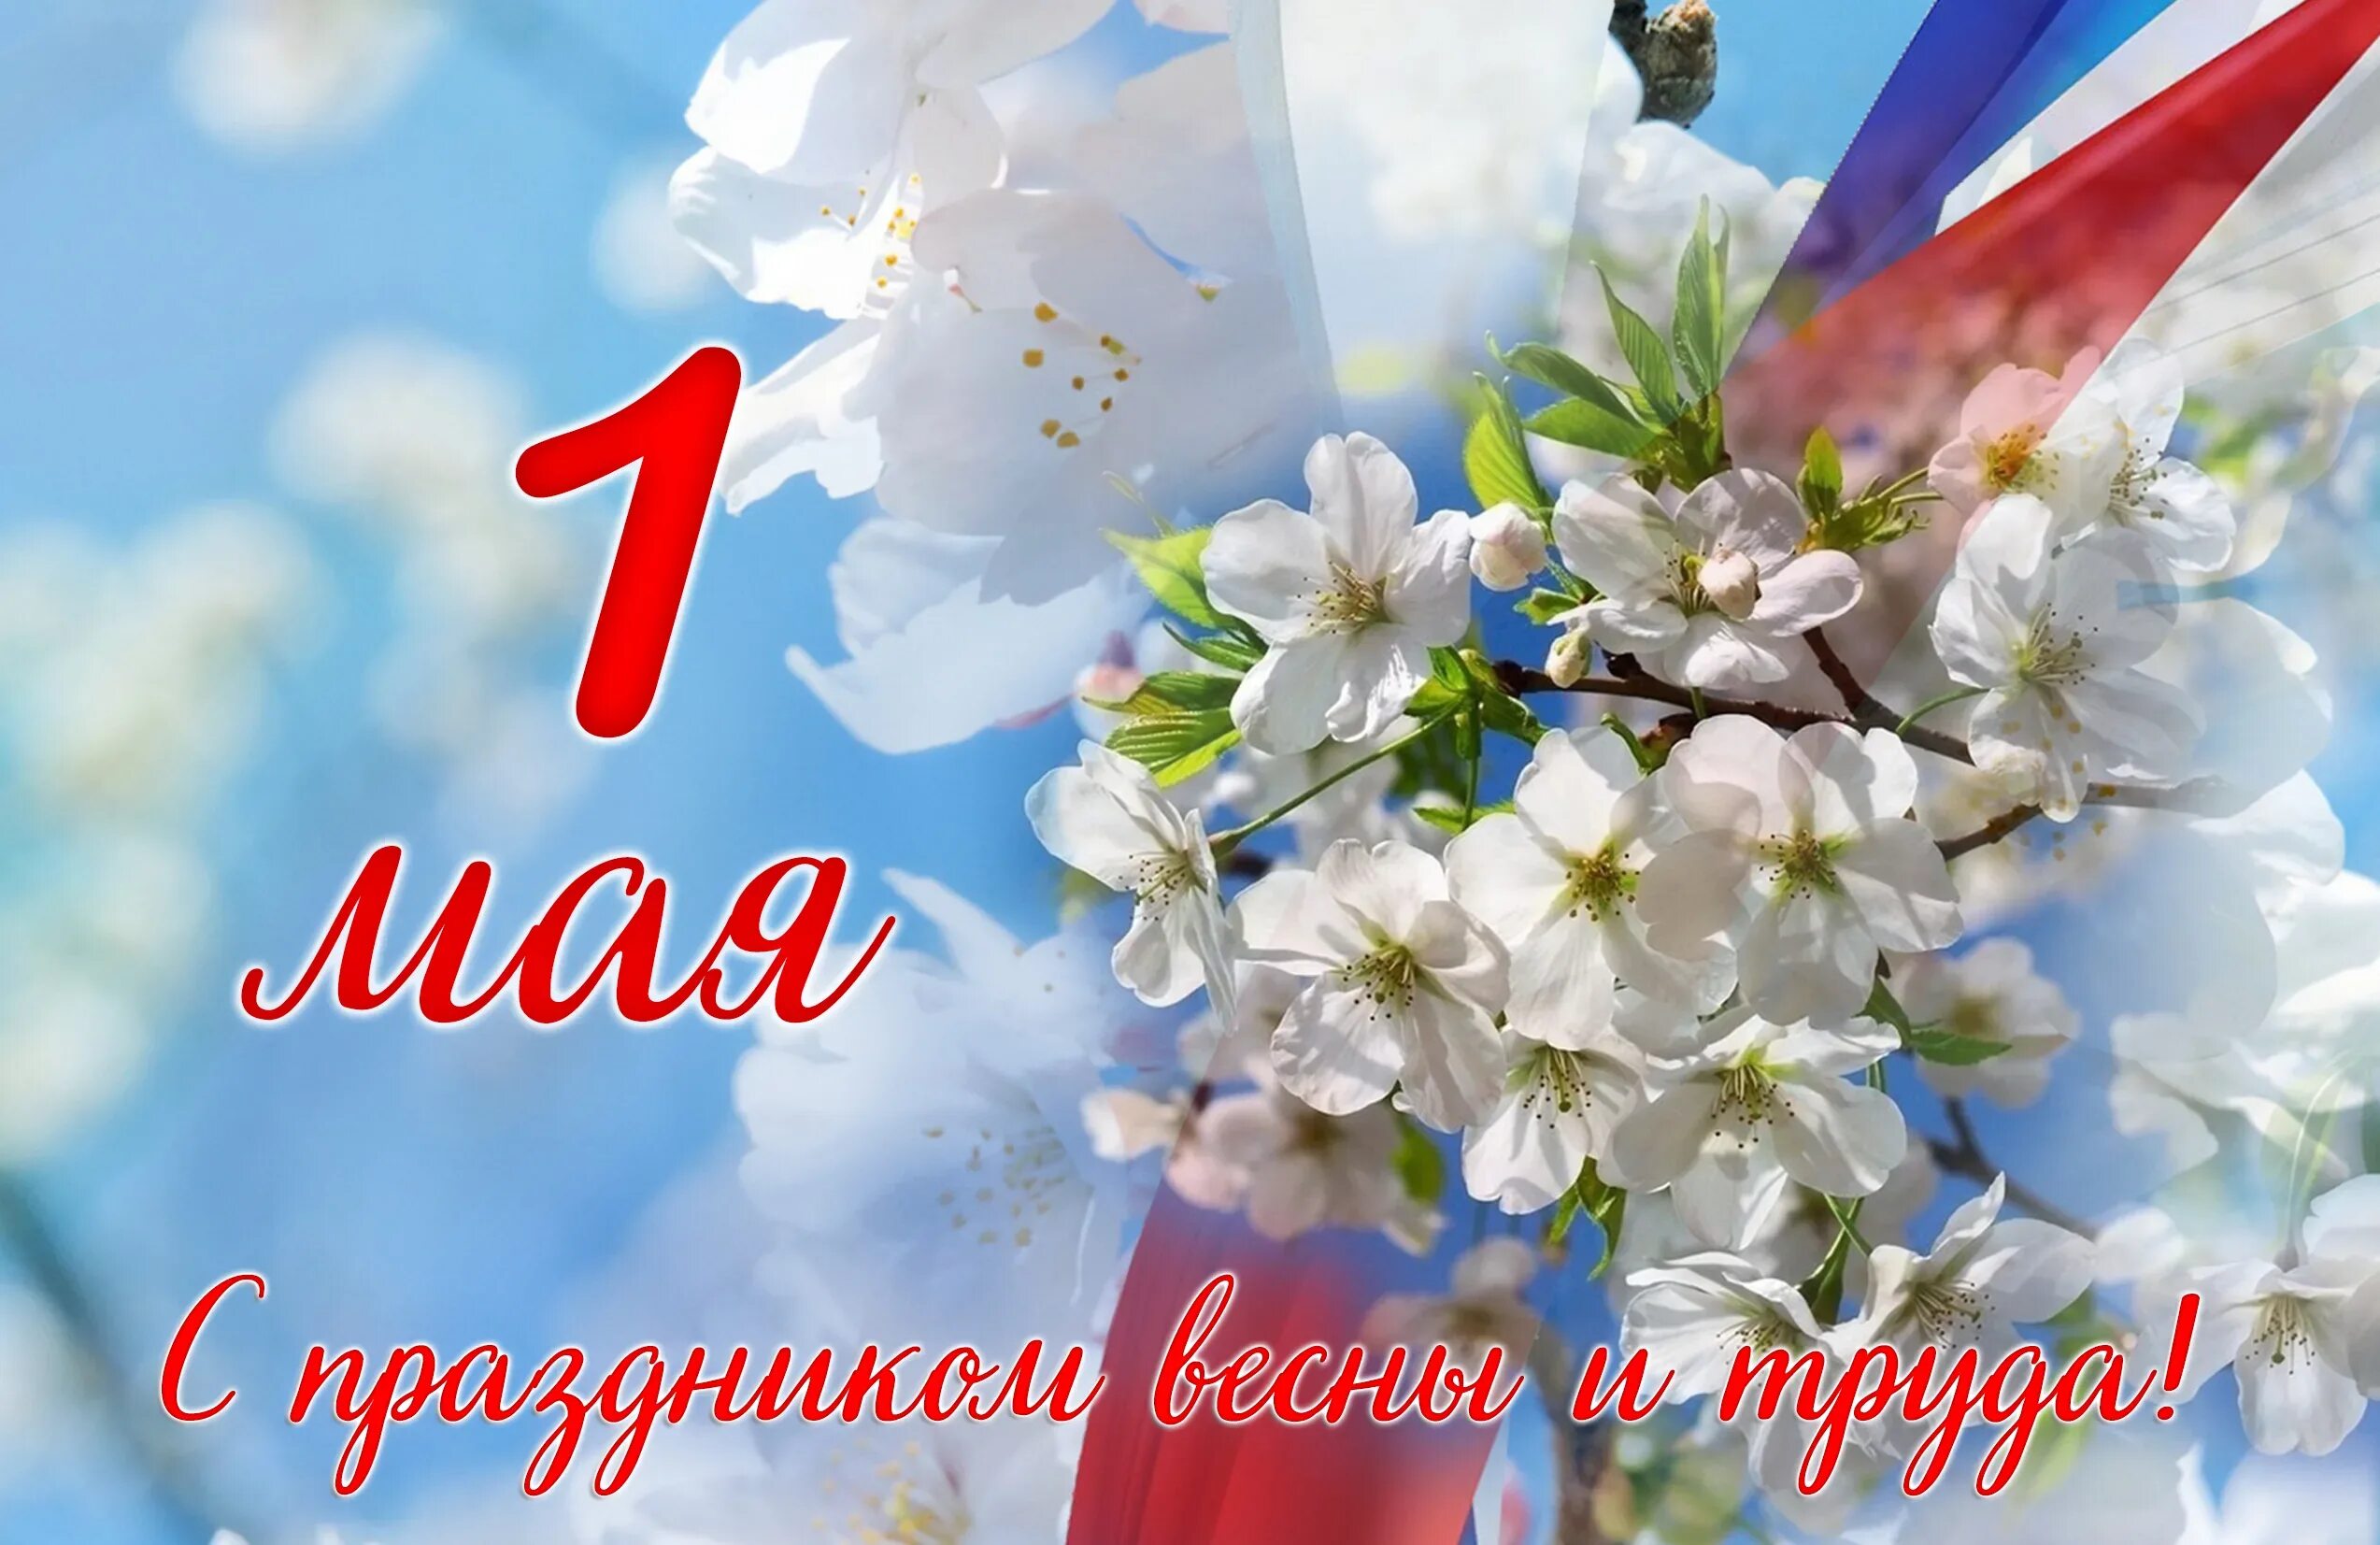 Обучение 1 мая. 1 Мая. 1 Мая праздник весны и труда. Поздравление с 1 мая. 1 Мая праздник.